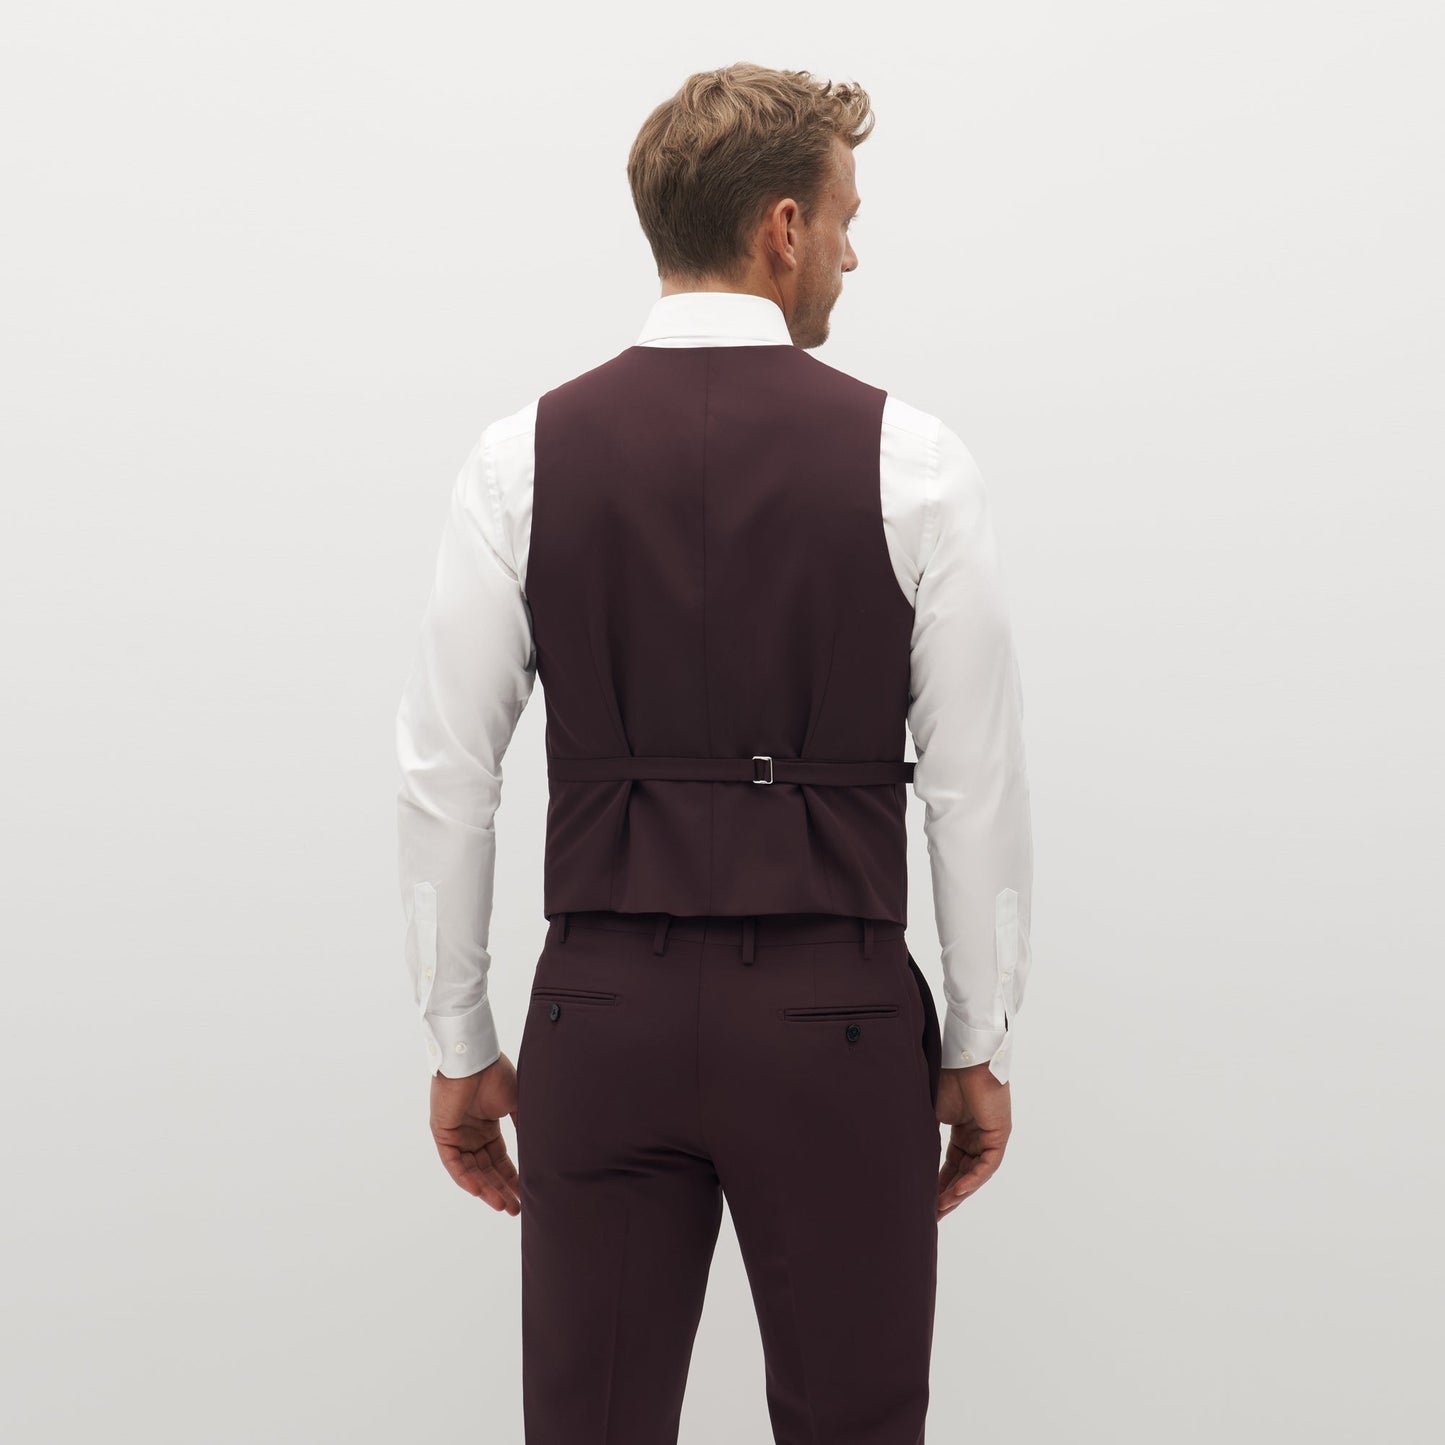 Burgundy Suit Vest by SuitShop